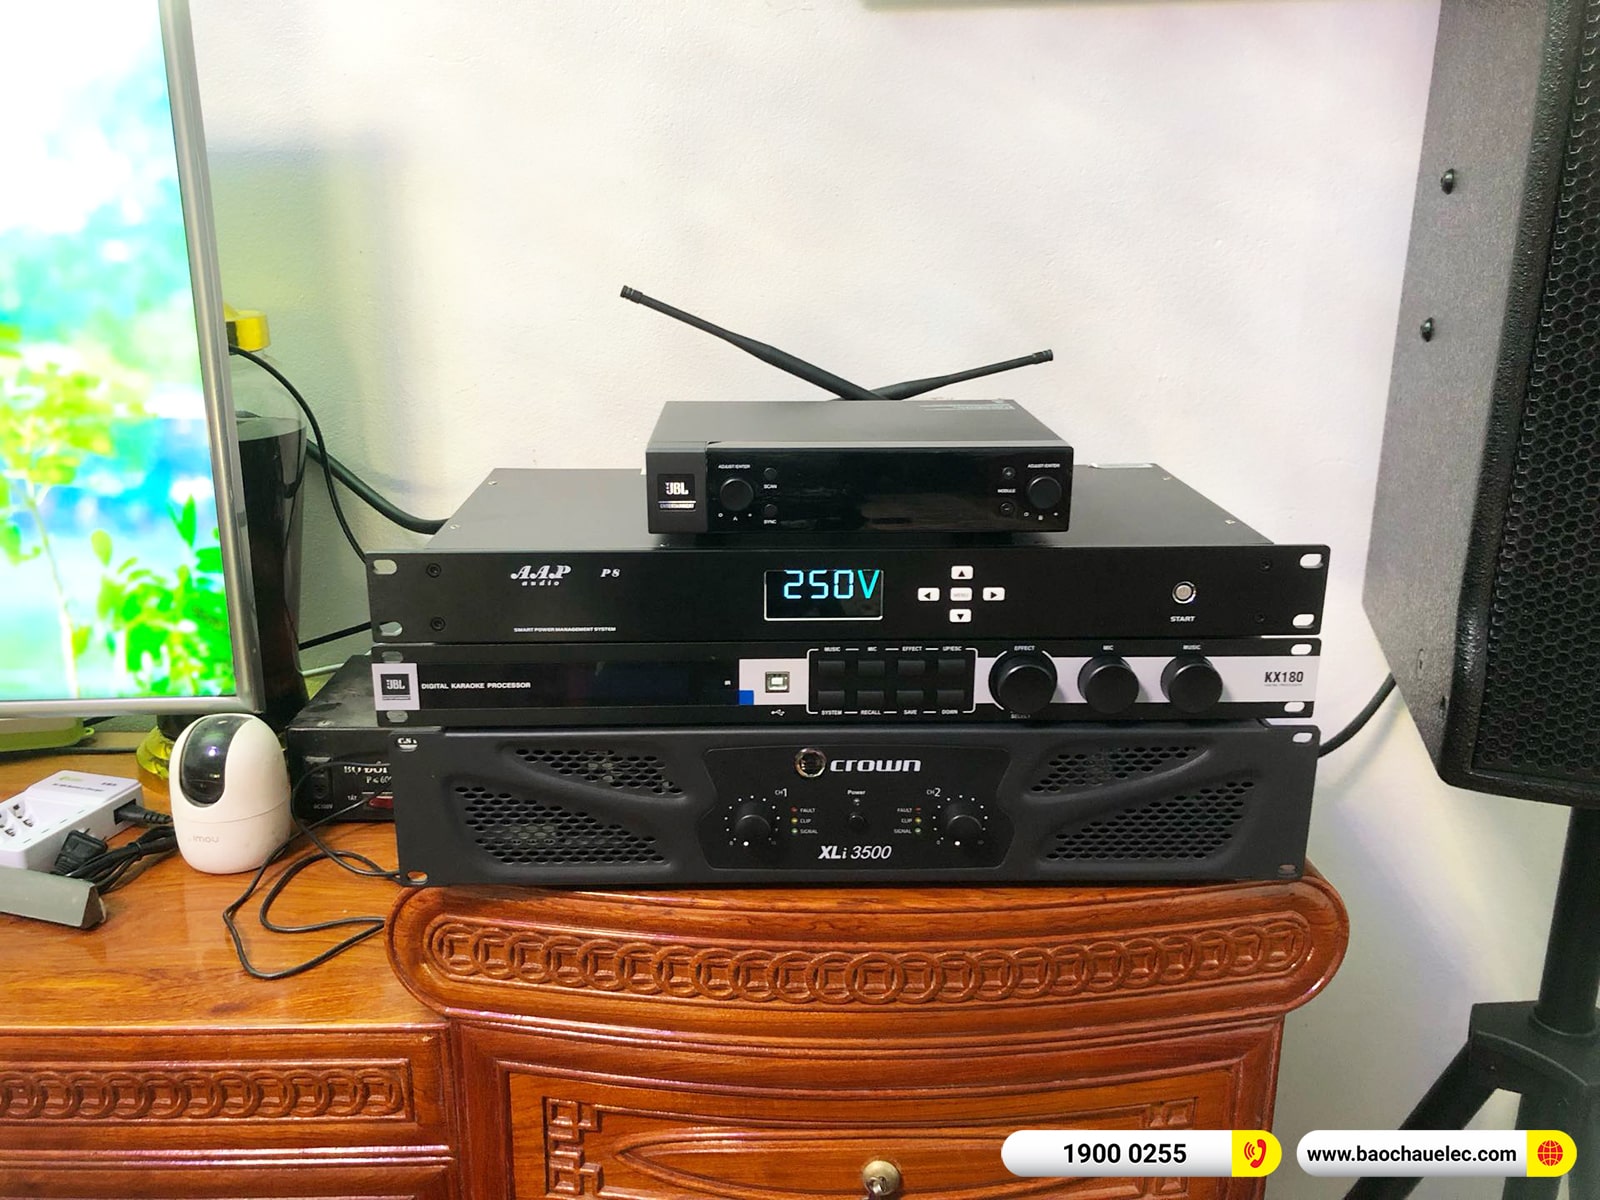 Lắp đặt dàn karaoke RCF hơn 131tr cho chú Điệp tại Bắc Giang (RCF CMAX 4112, Xli3500, KX180A, 702AS MK3, VM200, AAP P8) 